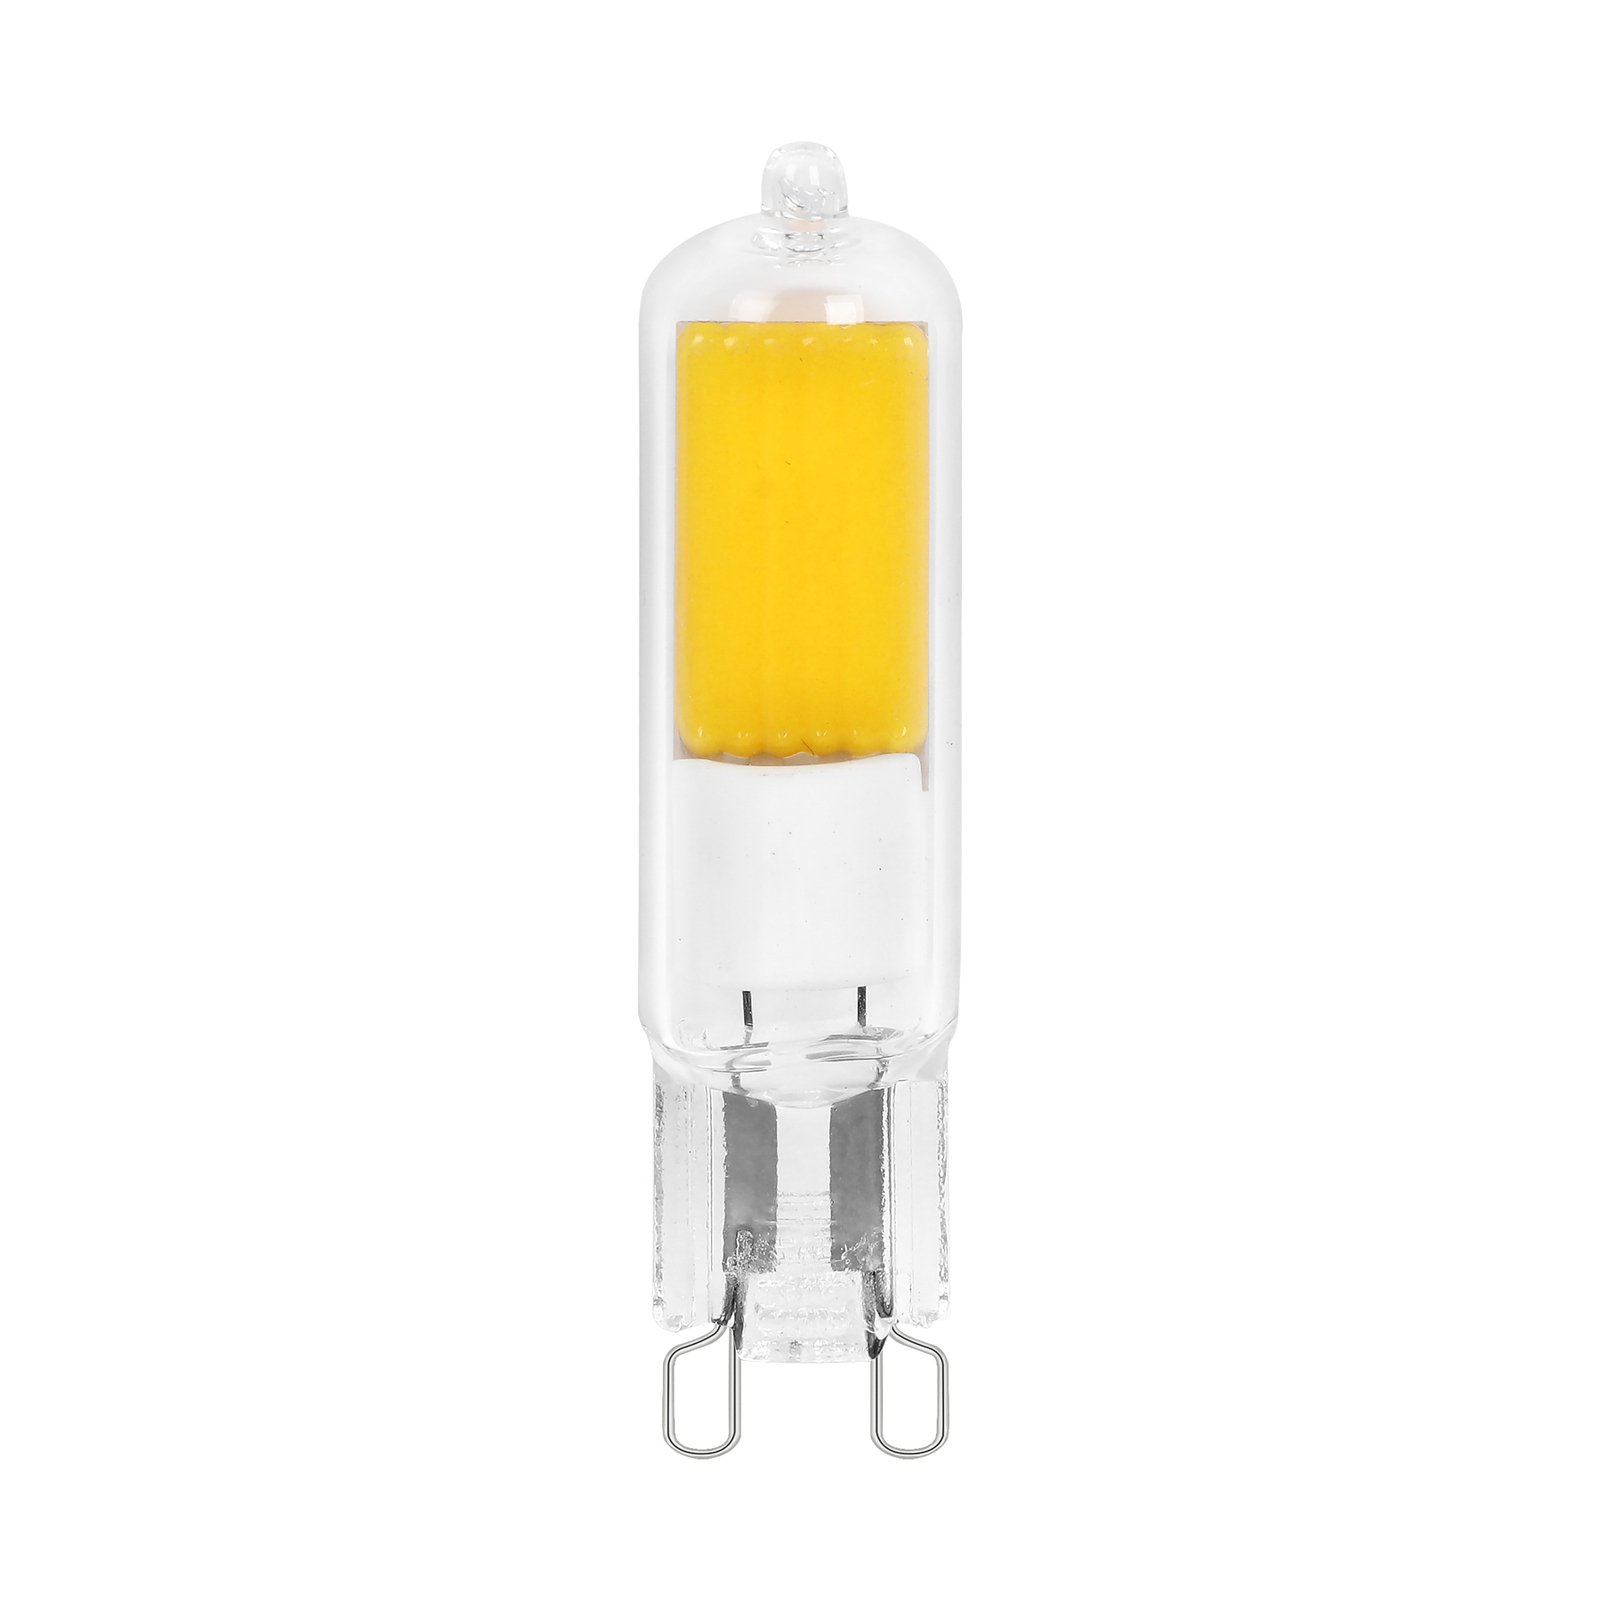 Arcchio bi-pin LED bulb, G9, 2.2W, 2700K, set of 3